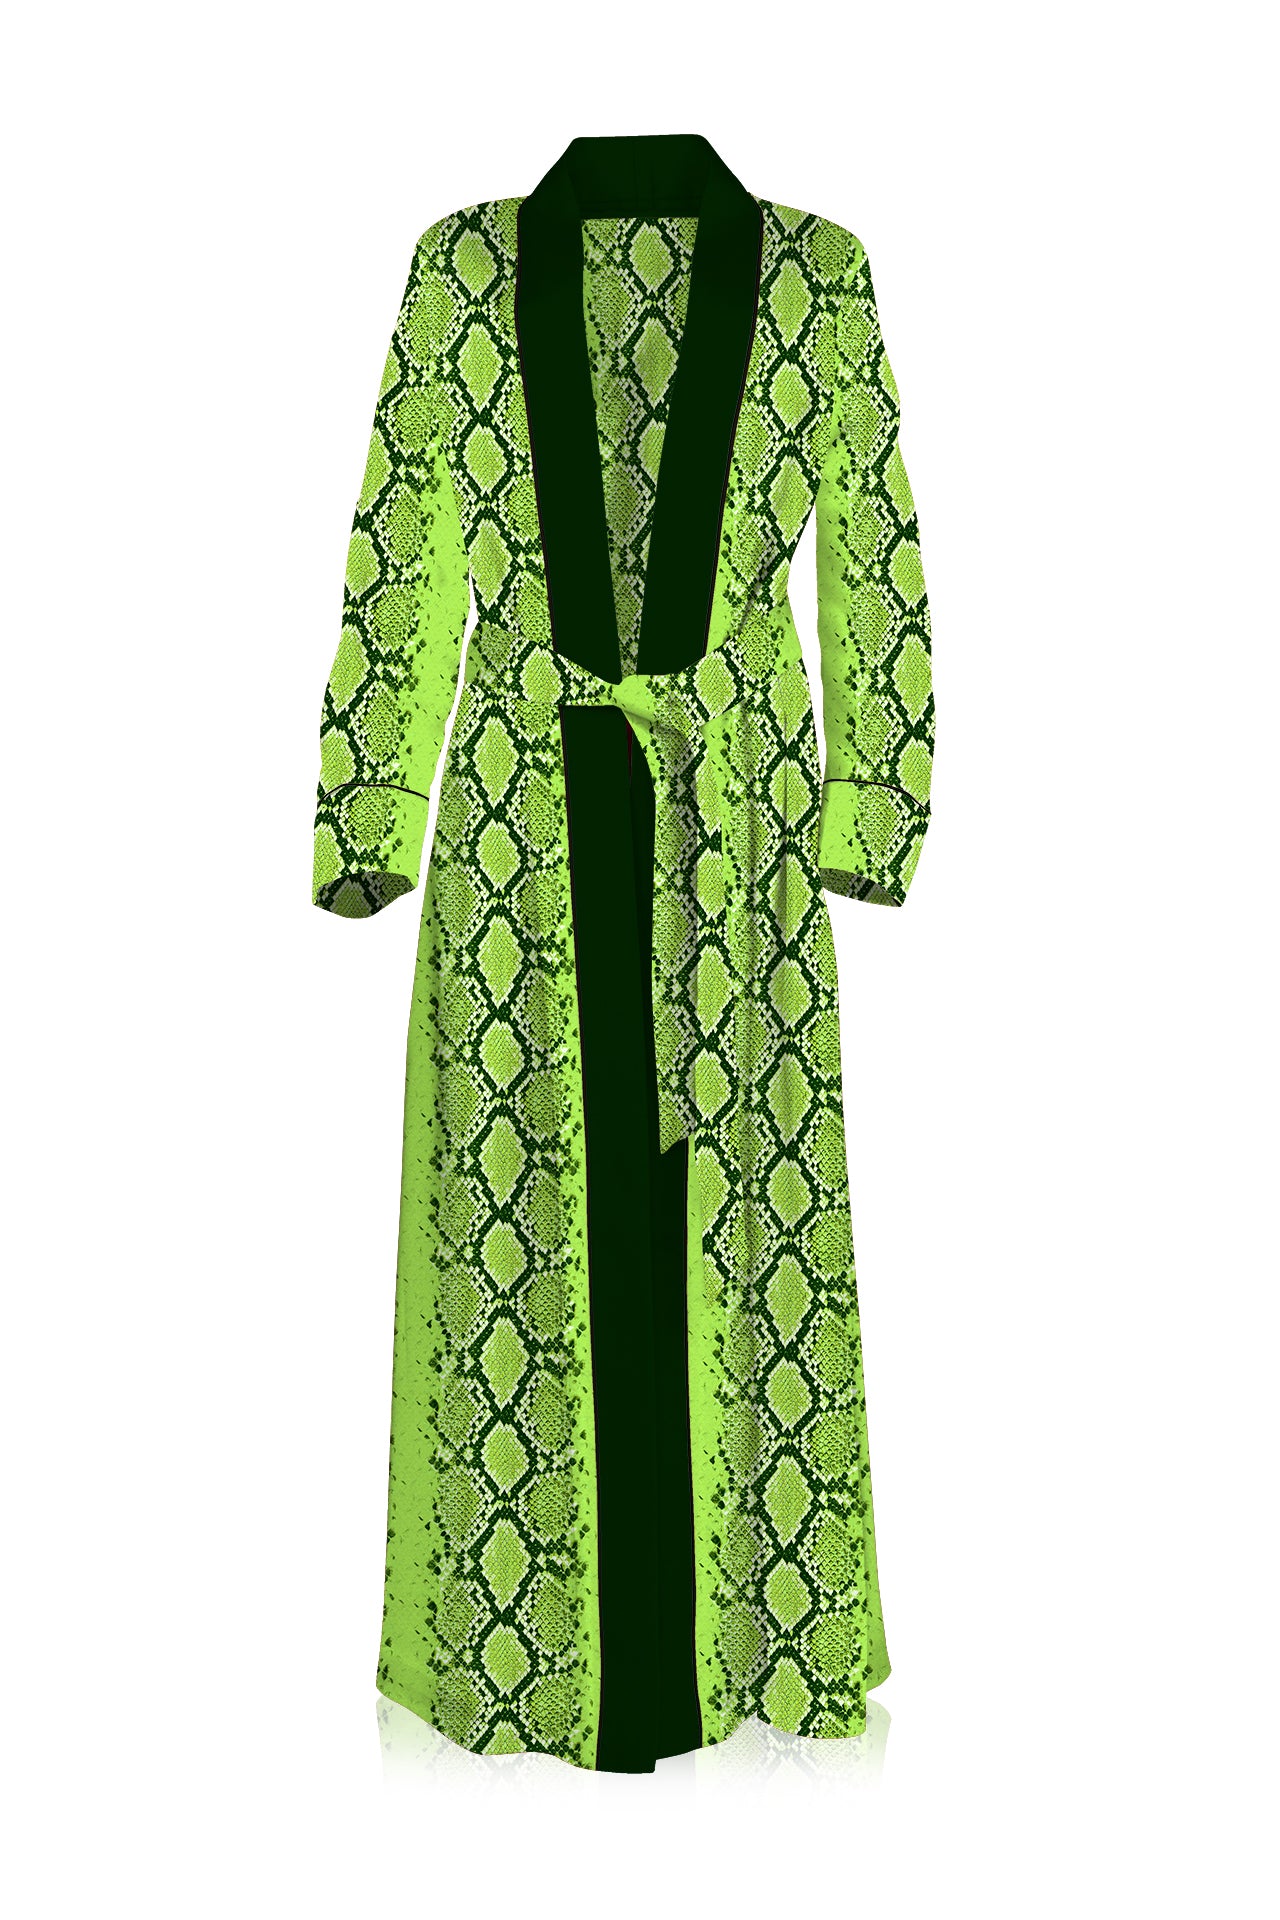 "neon green kimono" "snake print kimono" "beautiful kimono" "Kyle X Shahida"